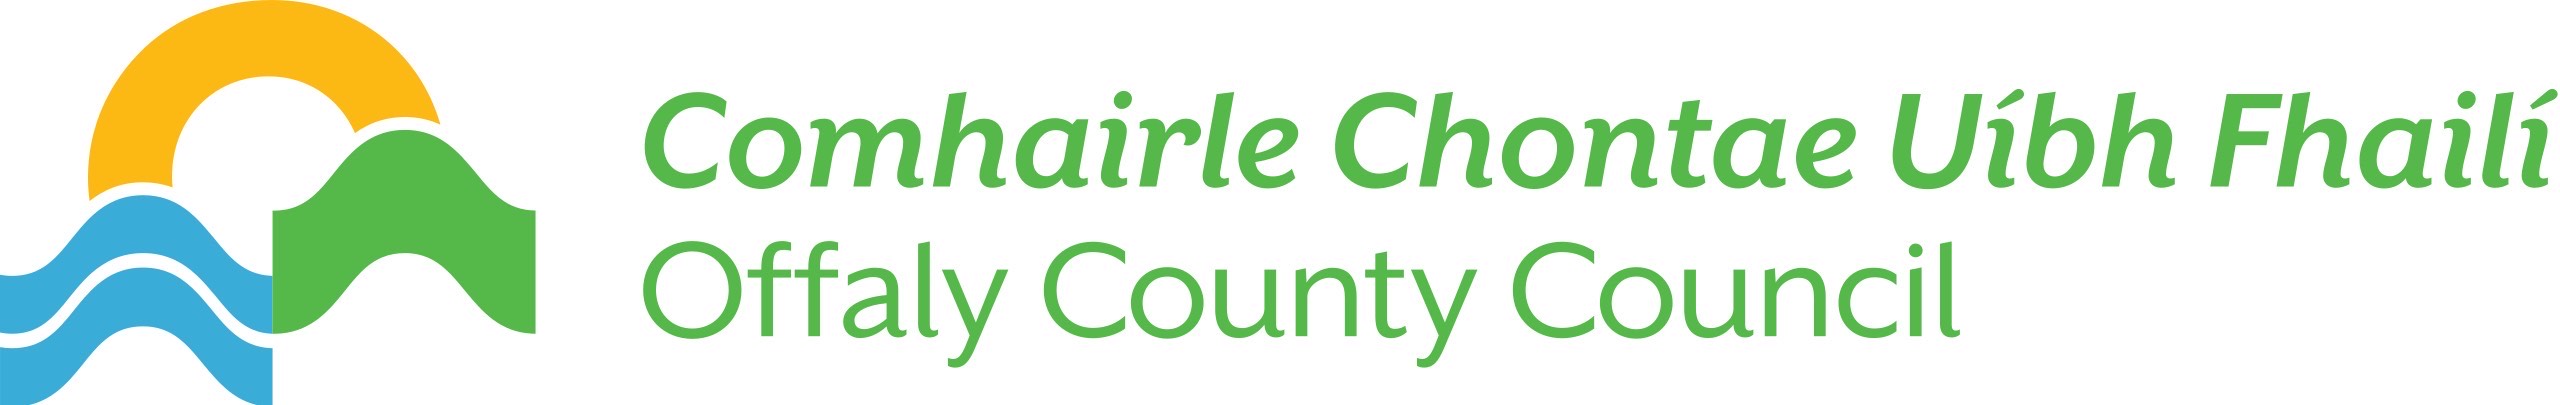 Offaly County Council logo 